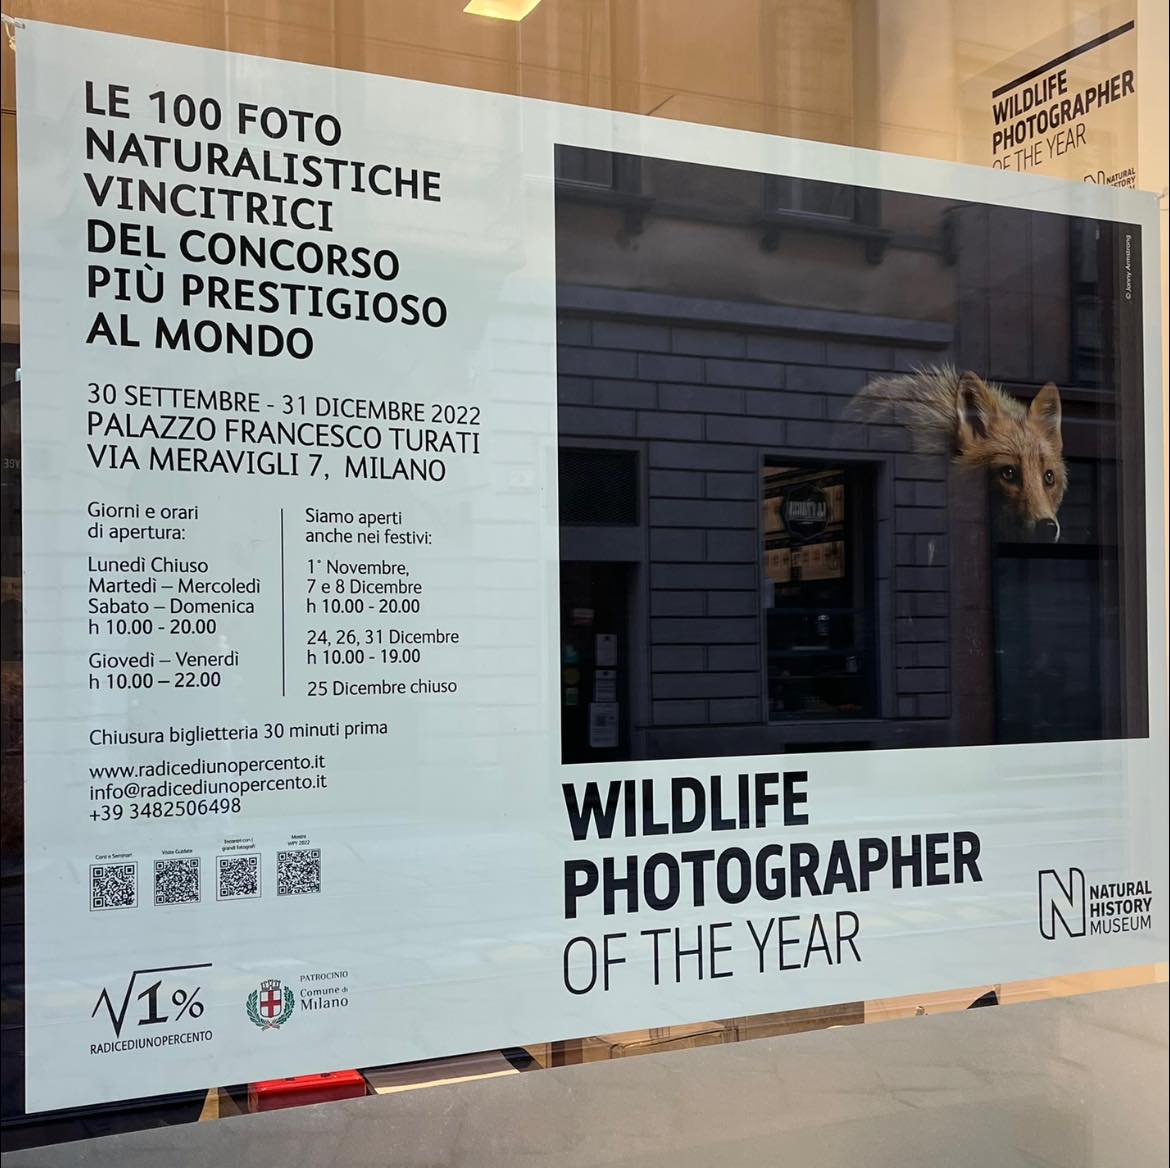 Wildlife Photographer of the Year: la mostra di fotografie naturalistiche a Milano